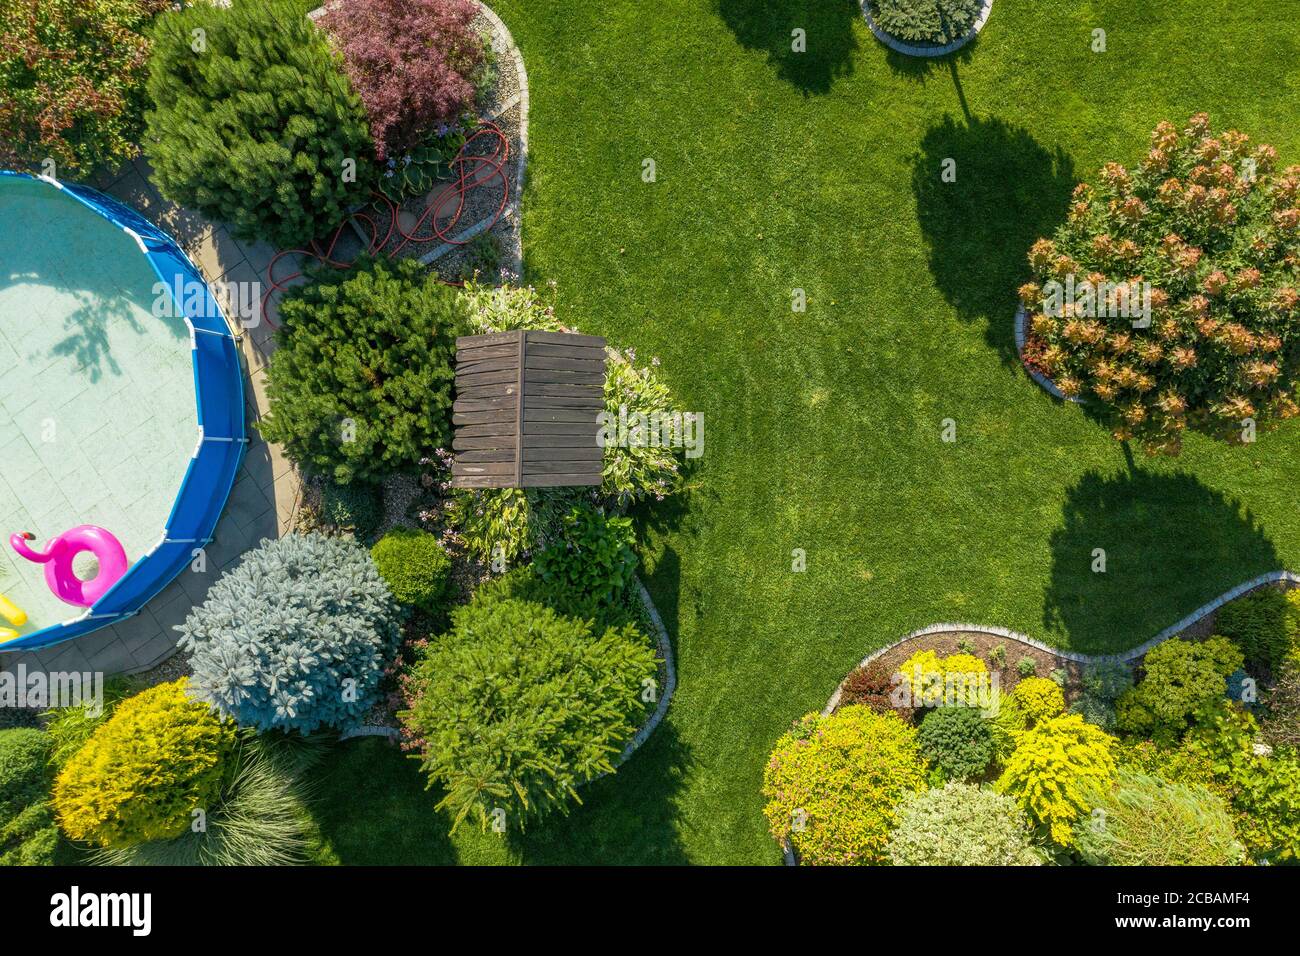 Industrie du jardinage et de l'aménagement paysager. Jardin résidentiel avec petite piscine d'en haut vue aérienne. Heure d'été. Banque D'Images